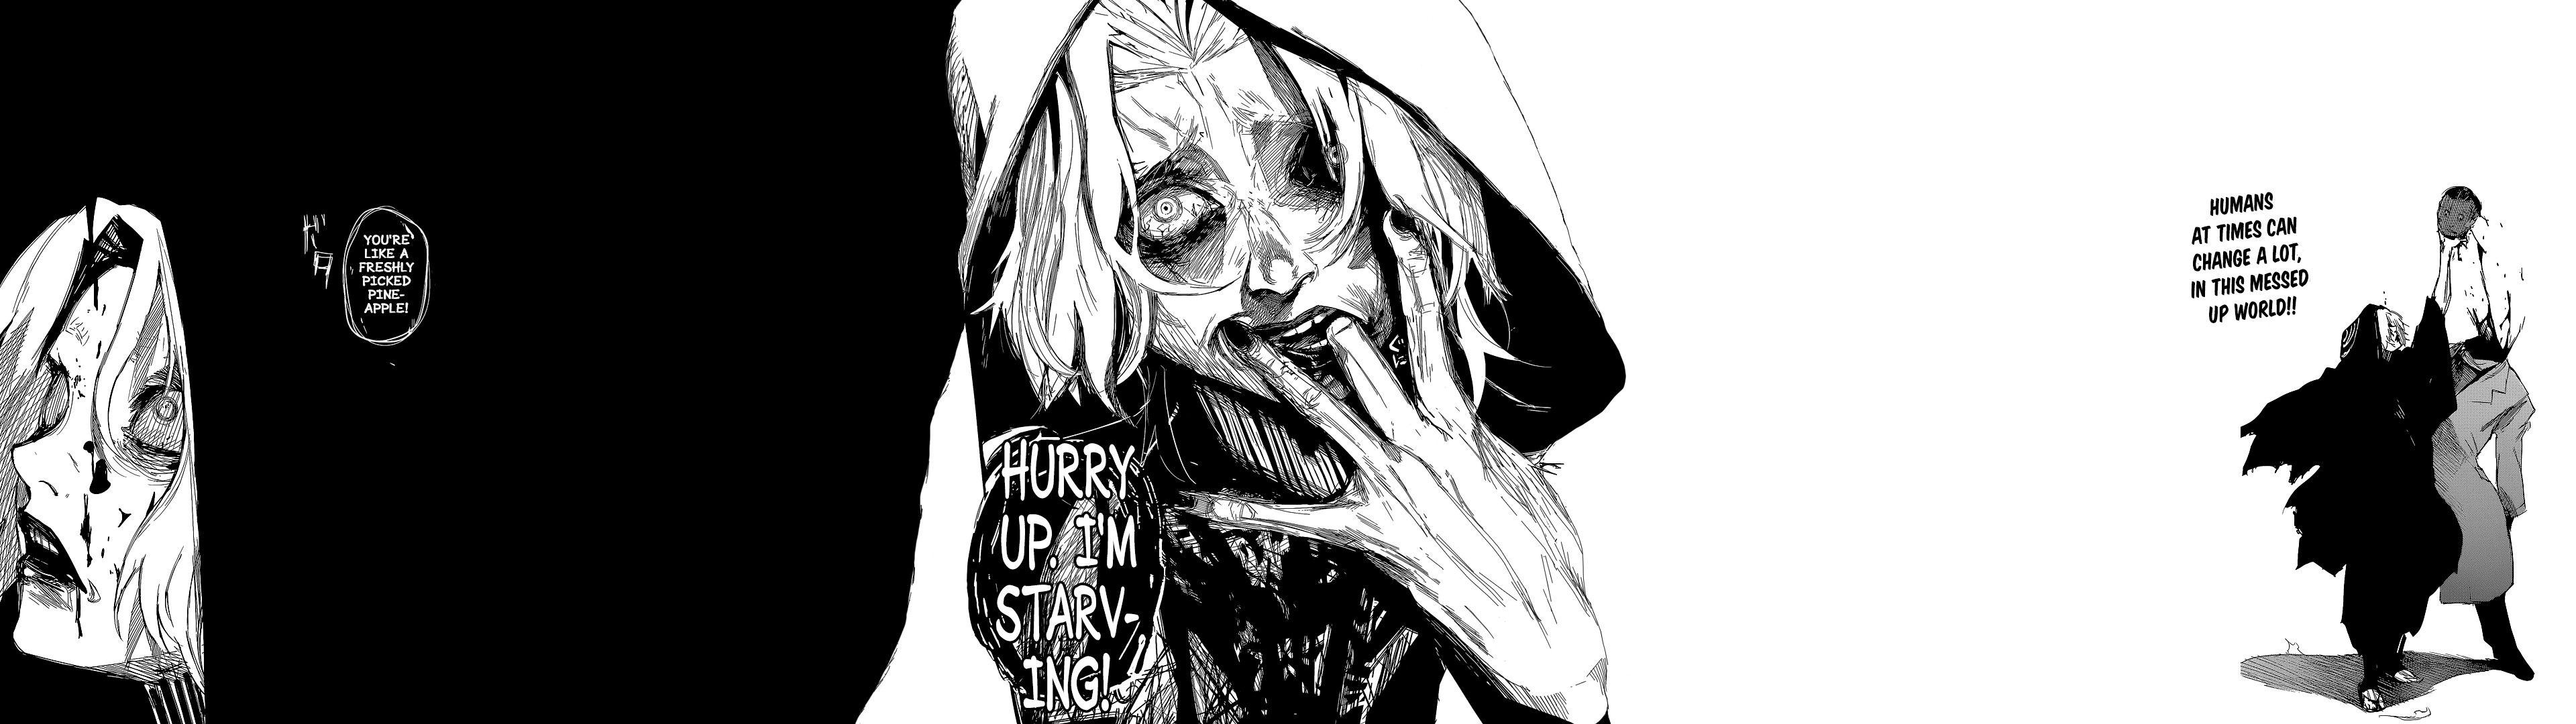 Tokyo Ghoul Manga Wallpaper 2020